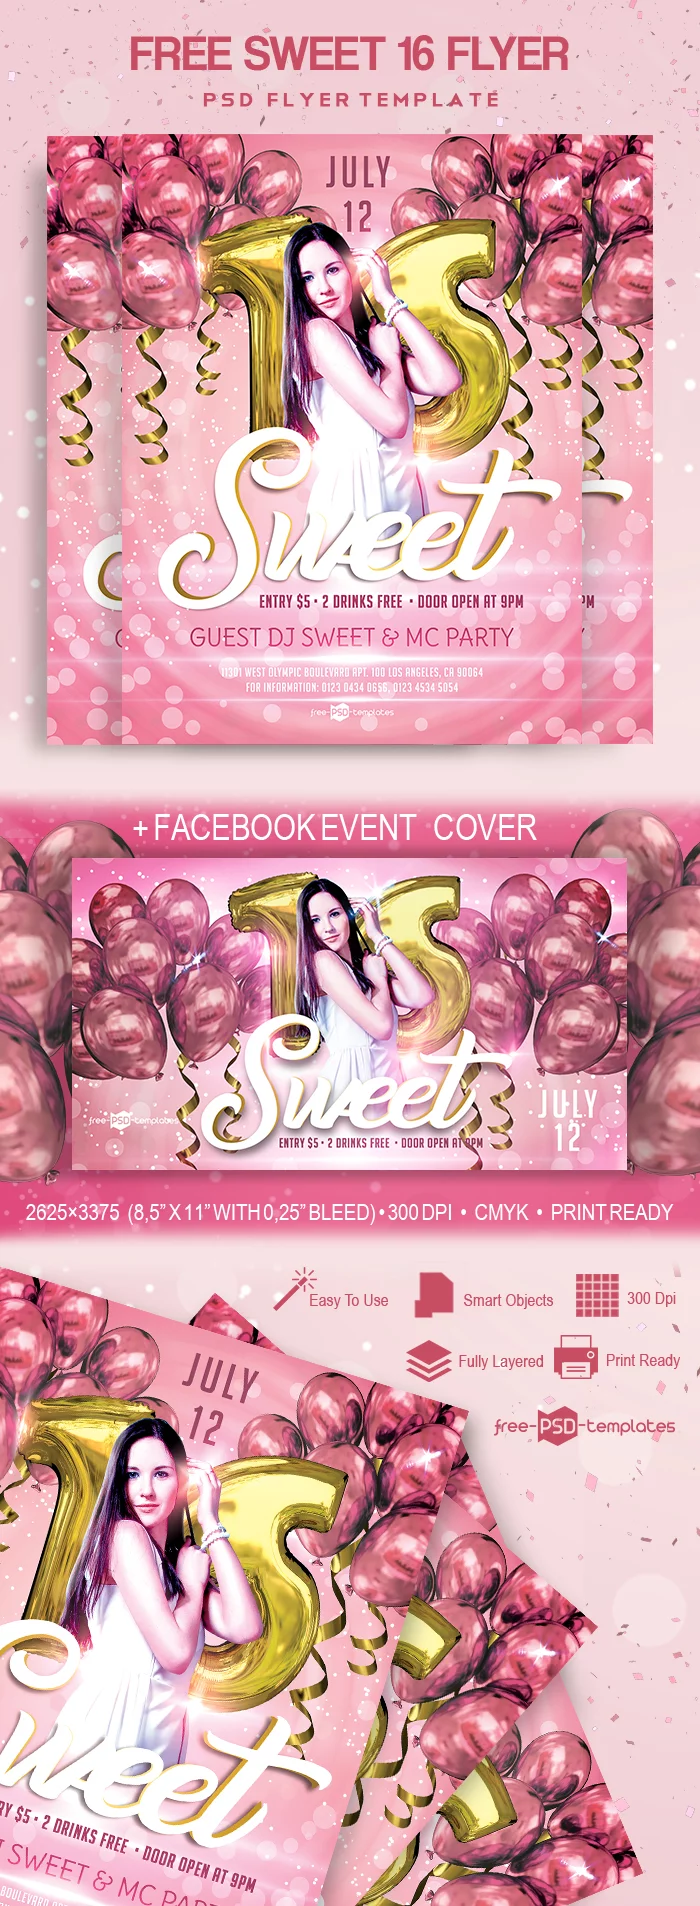 Free Sweet 16 Flyer in PSD